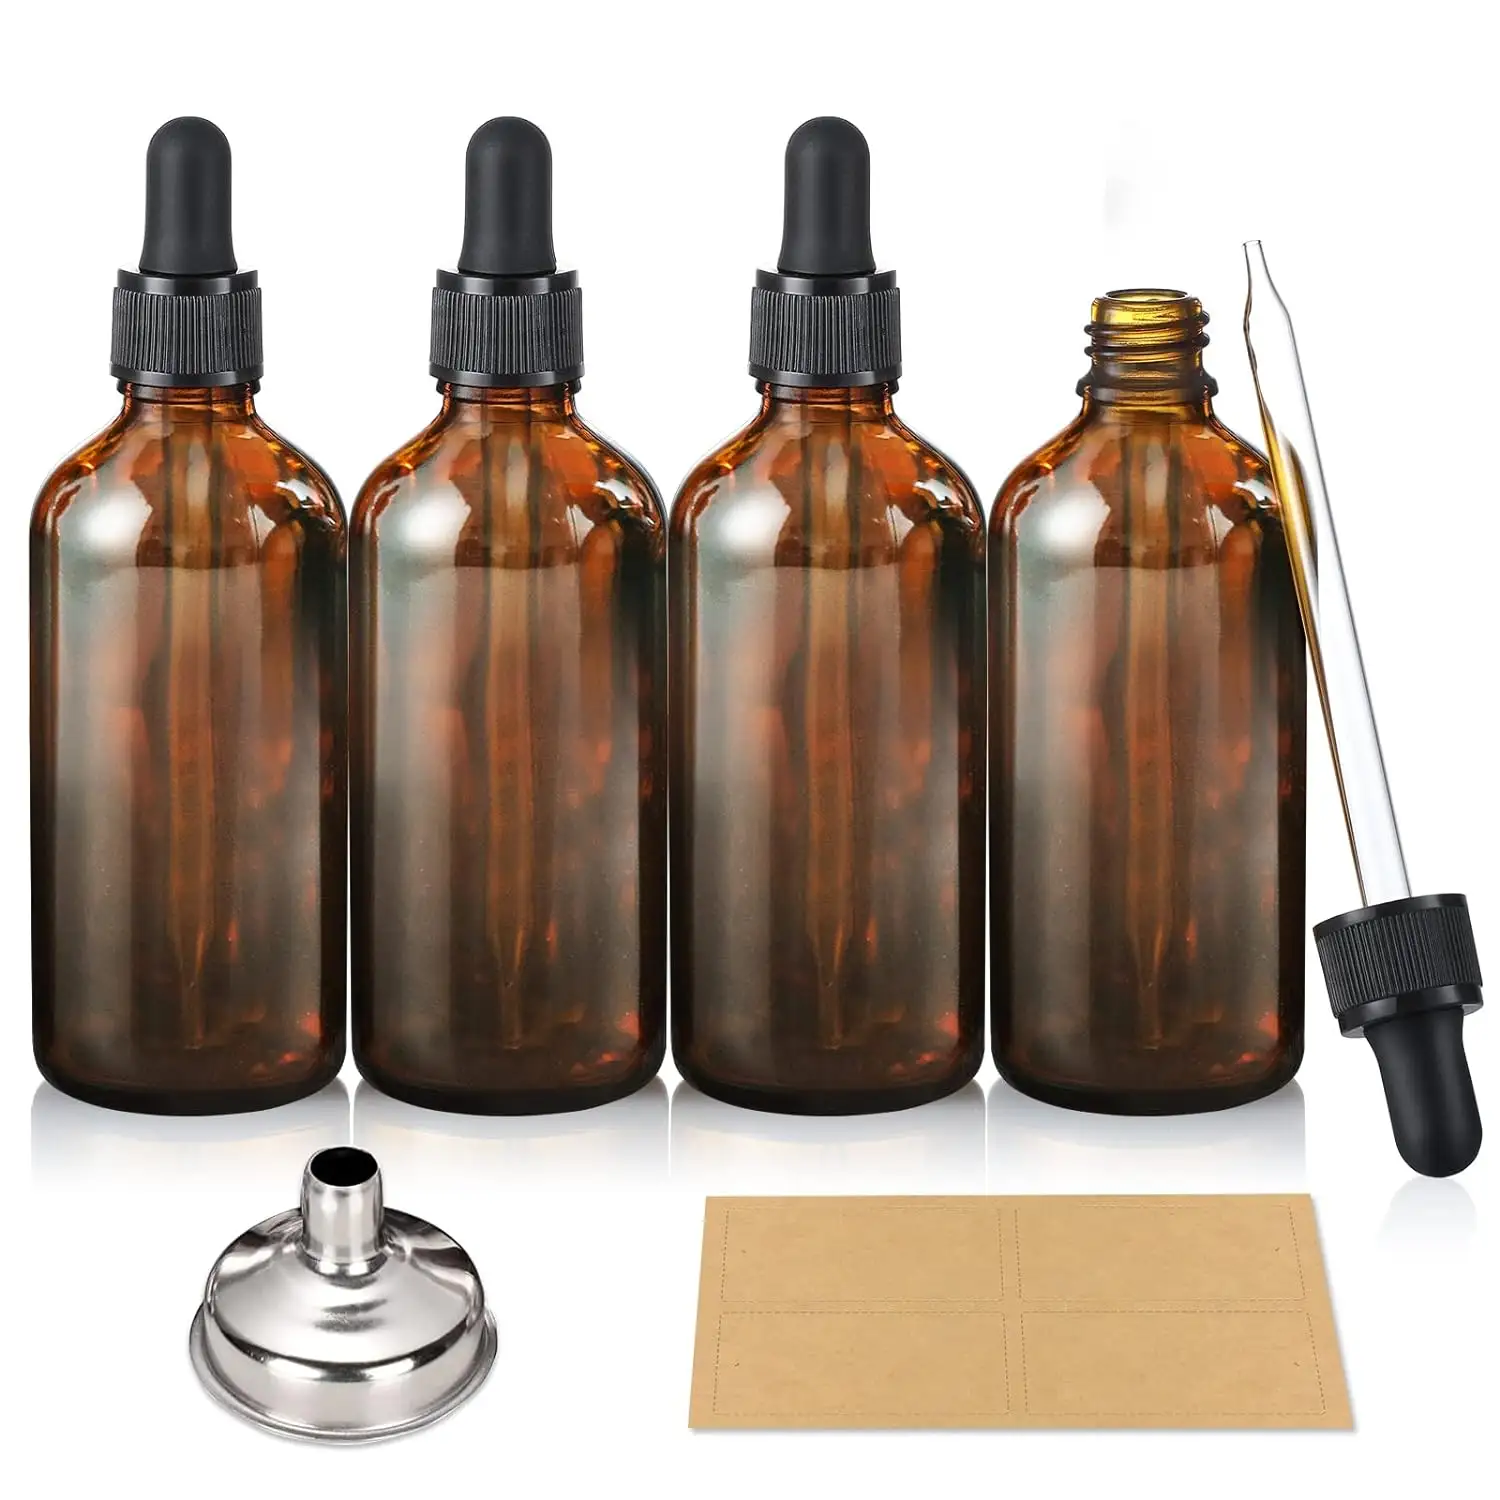 100ml 3,4 Unzen braune Glas tinktur flaschen mit Augentropfen für ätherische Öle, flüssigkeits beständige Reise flaschen